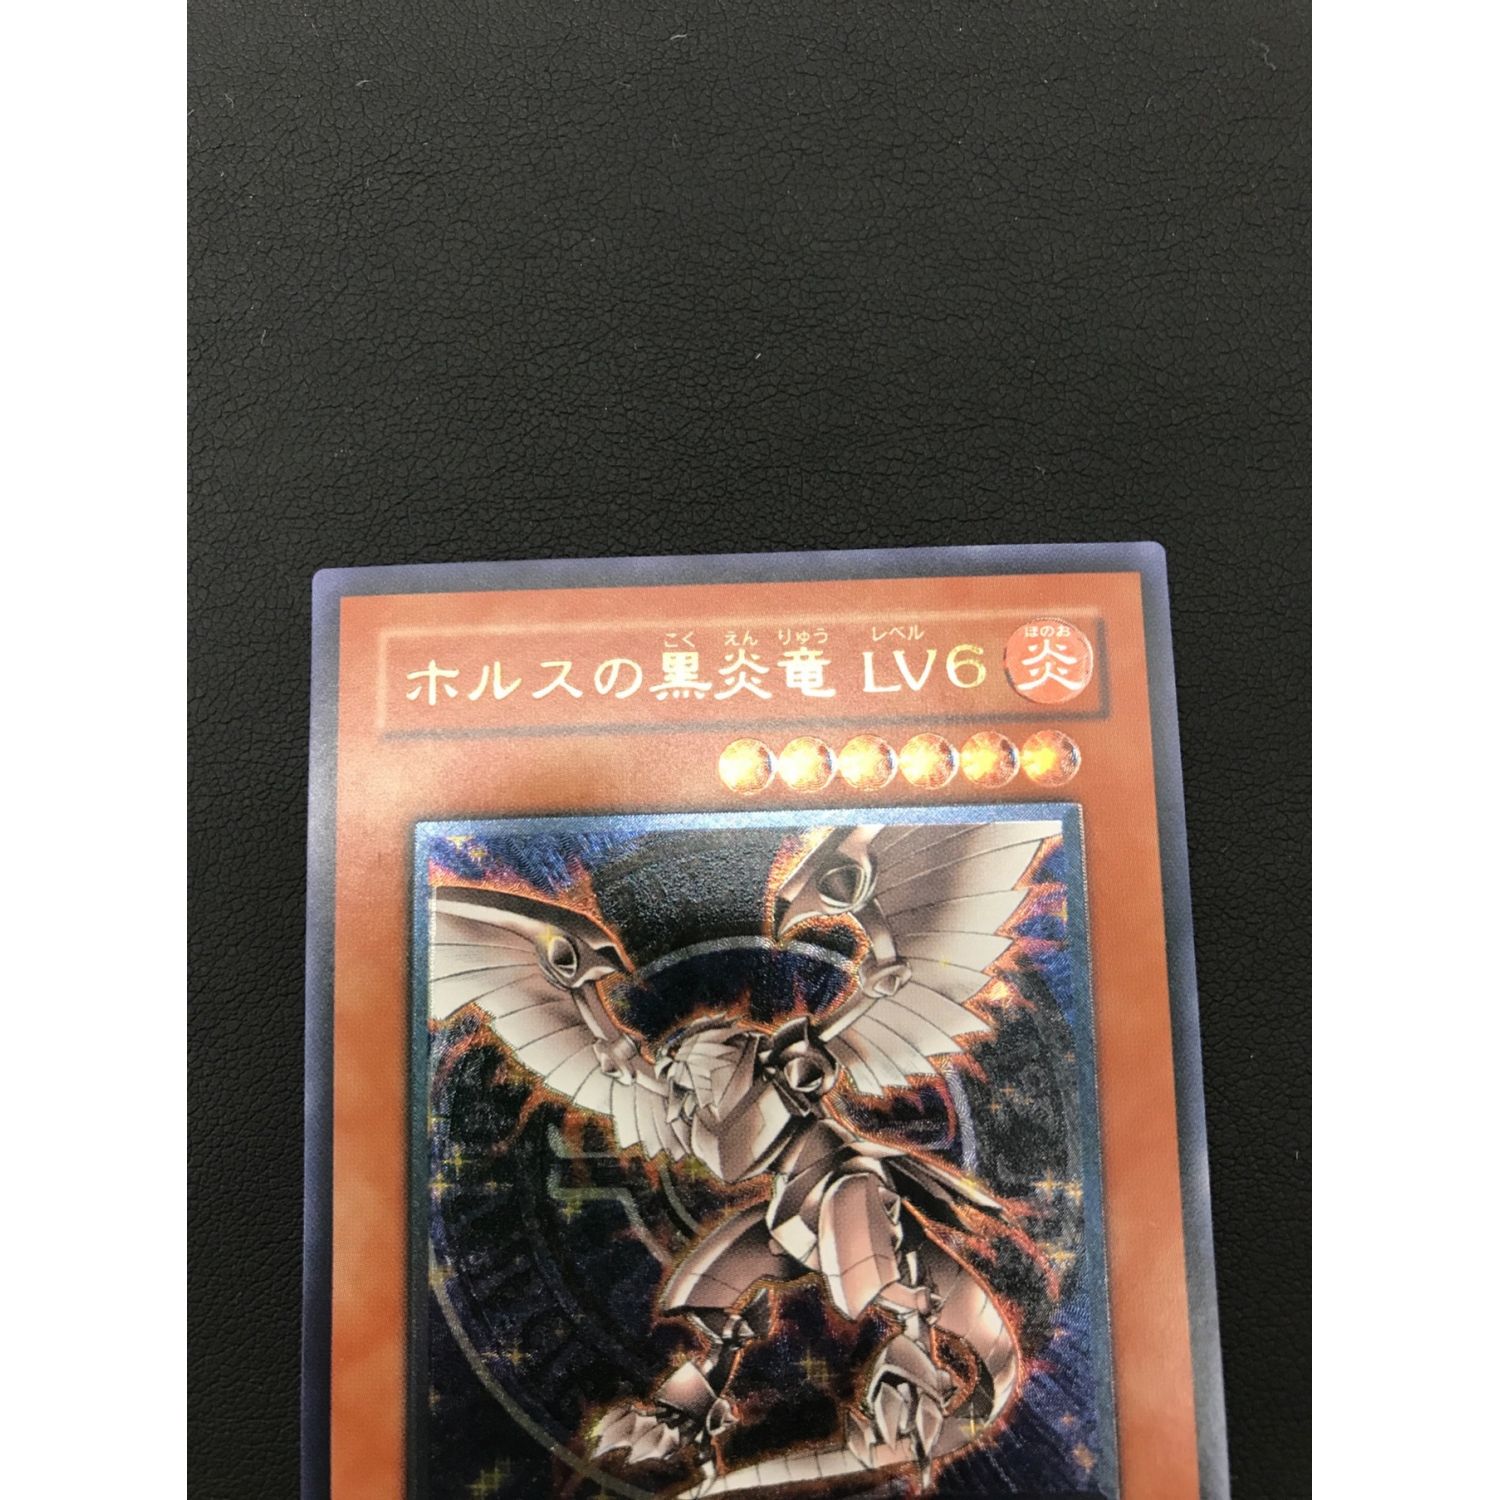 遊戯王カード ホルスの黒炎竜 LV6 SOD-JP007 アルティメットレア 